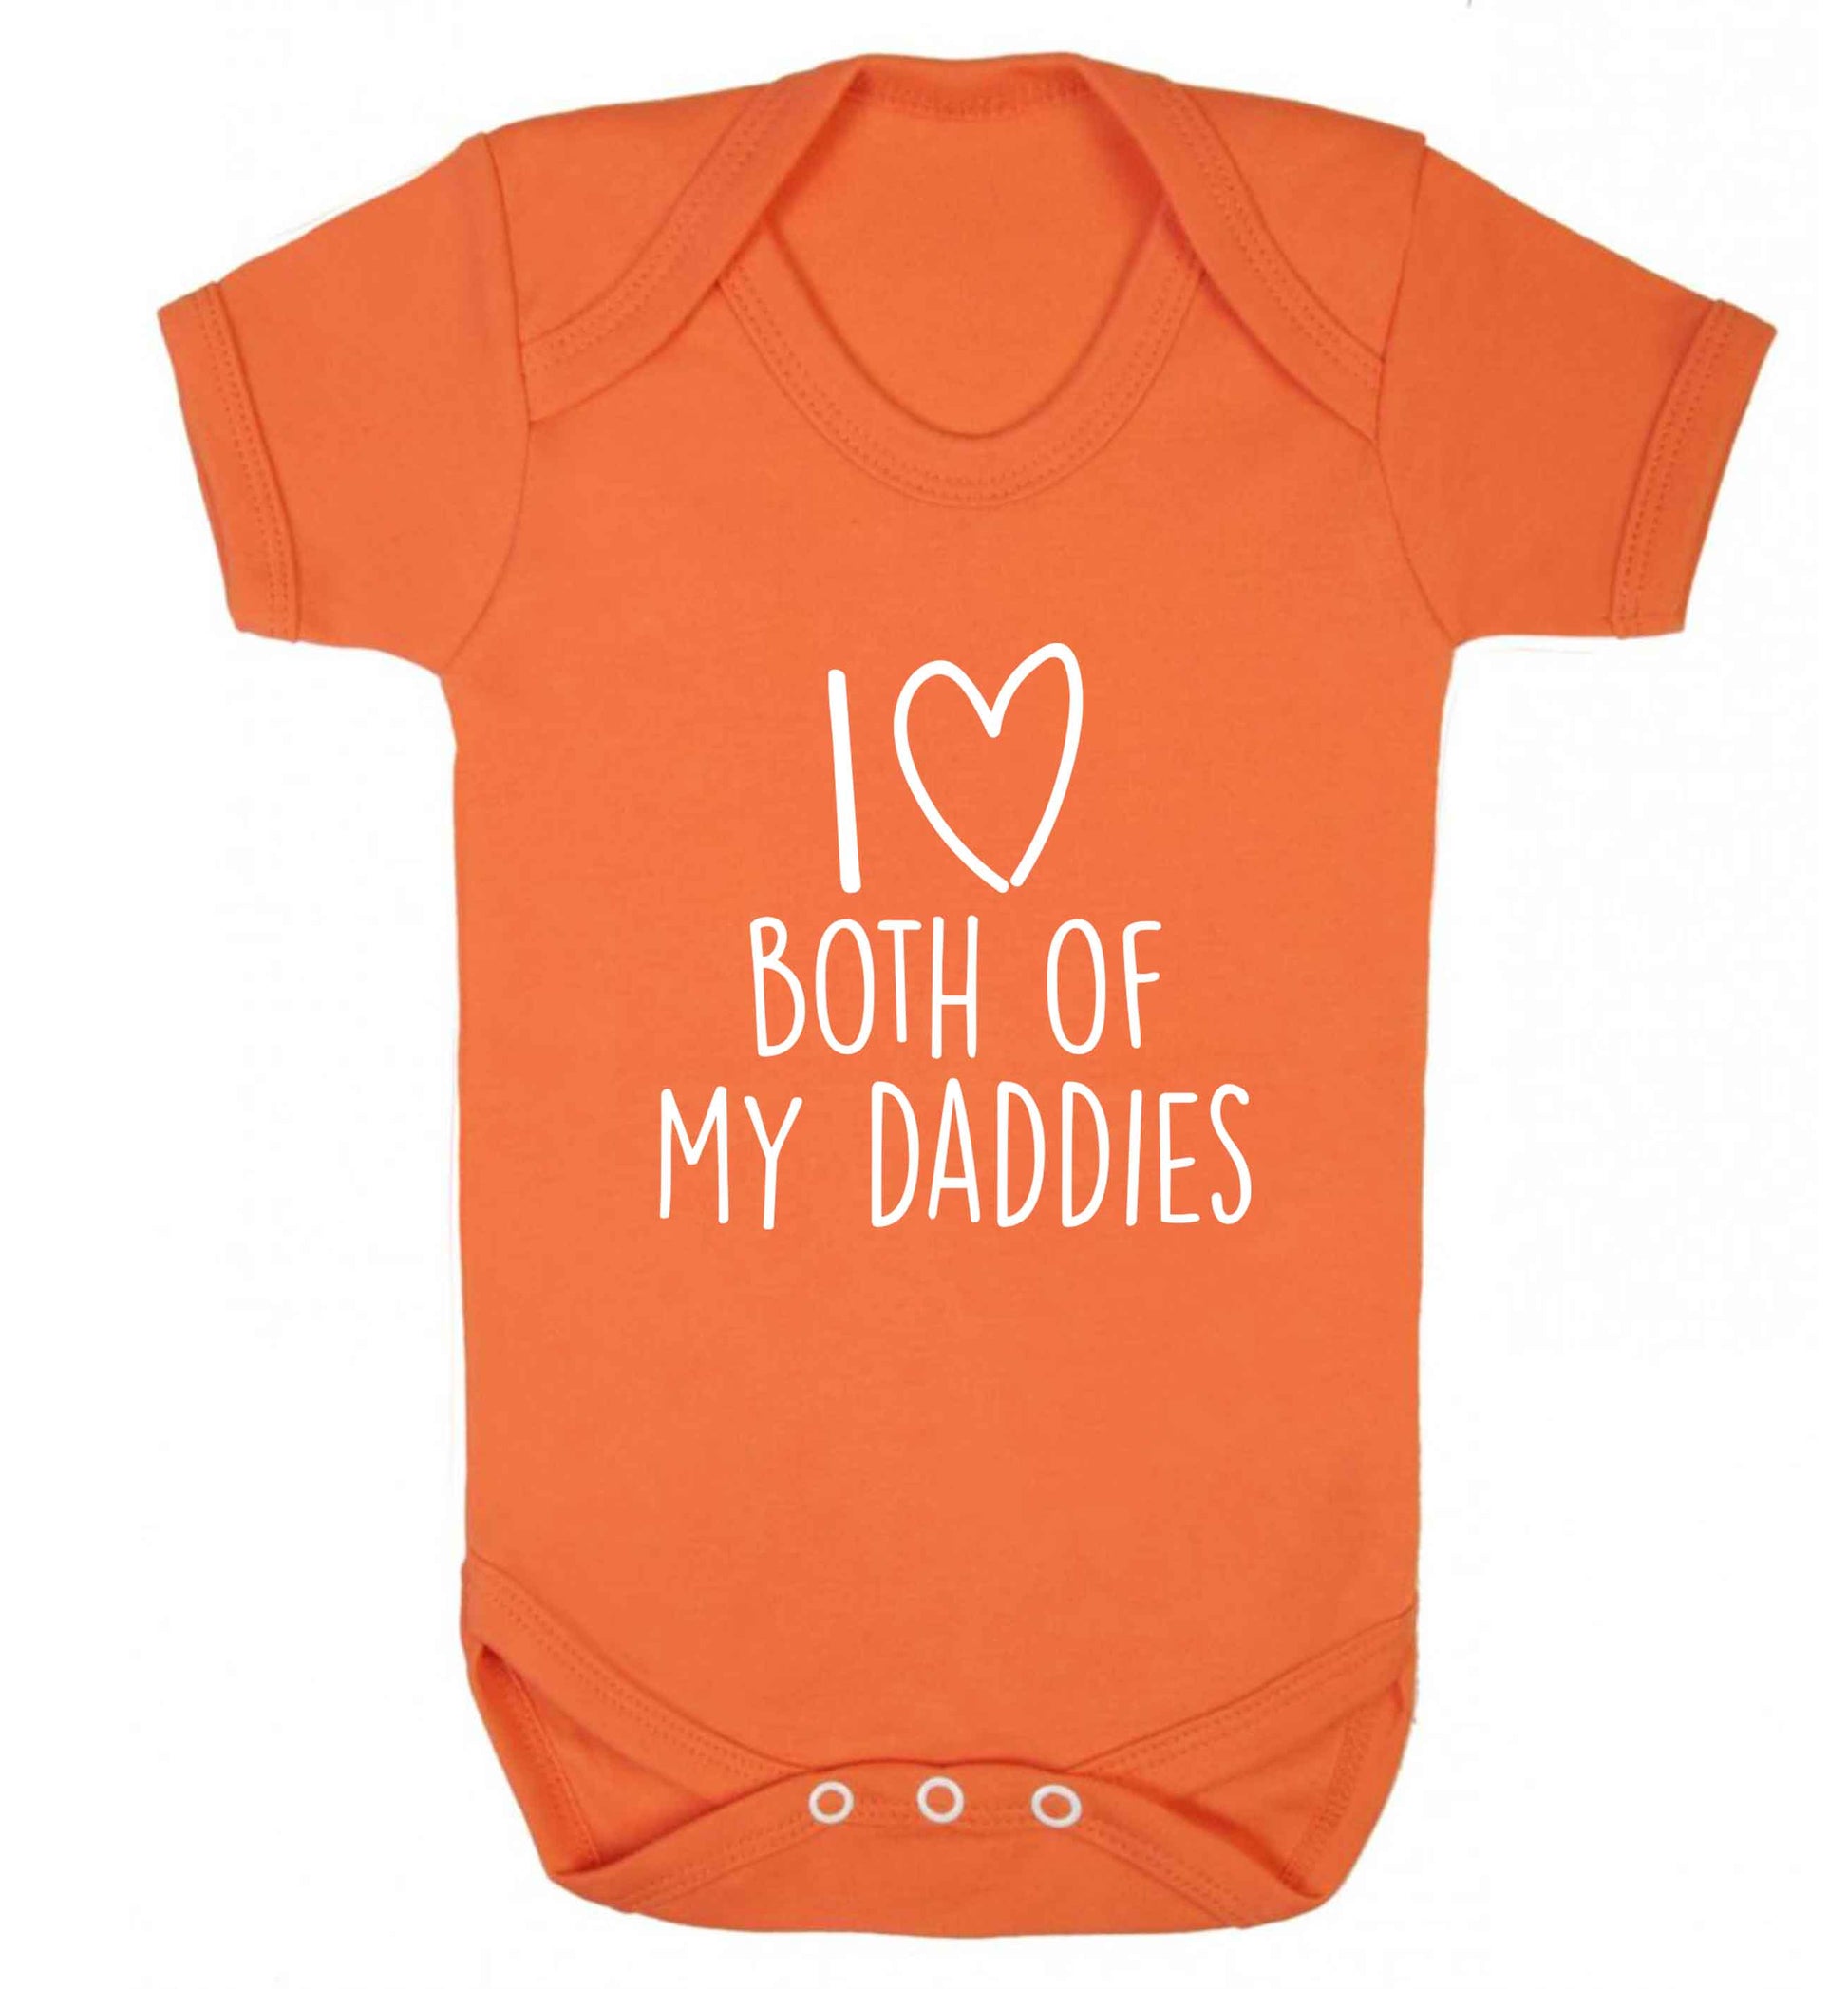 I love both of my daddies baby vest orange 18-24 months